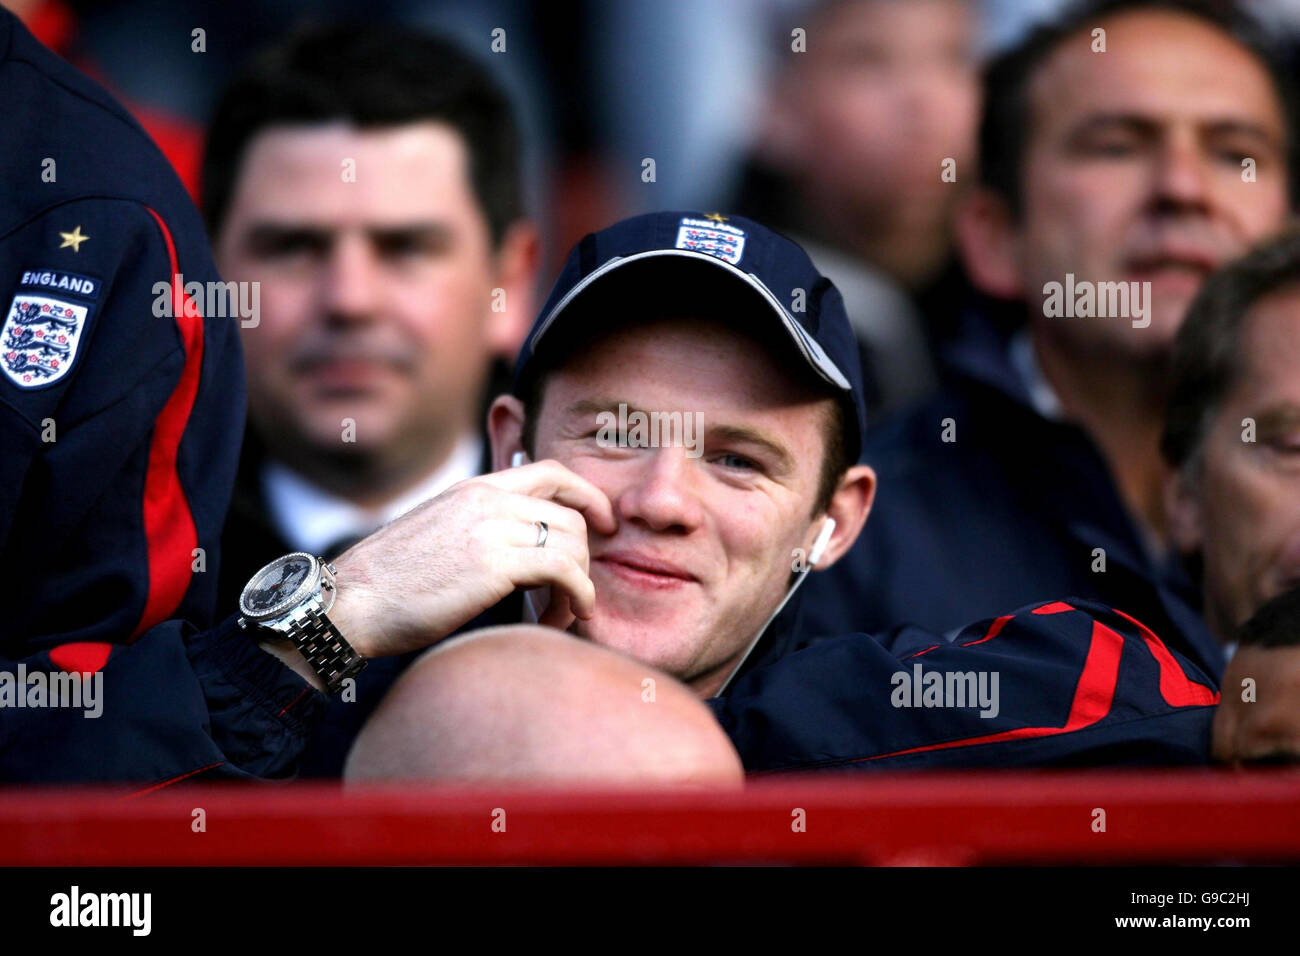 Wayne Rooney, en Angleterre, est en avance sur le match international amical contre la Hongrie à Old Trafford, Manchester. Banque D'Images